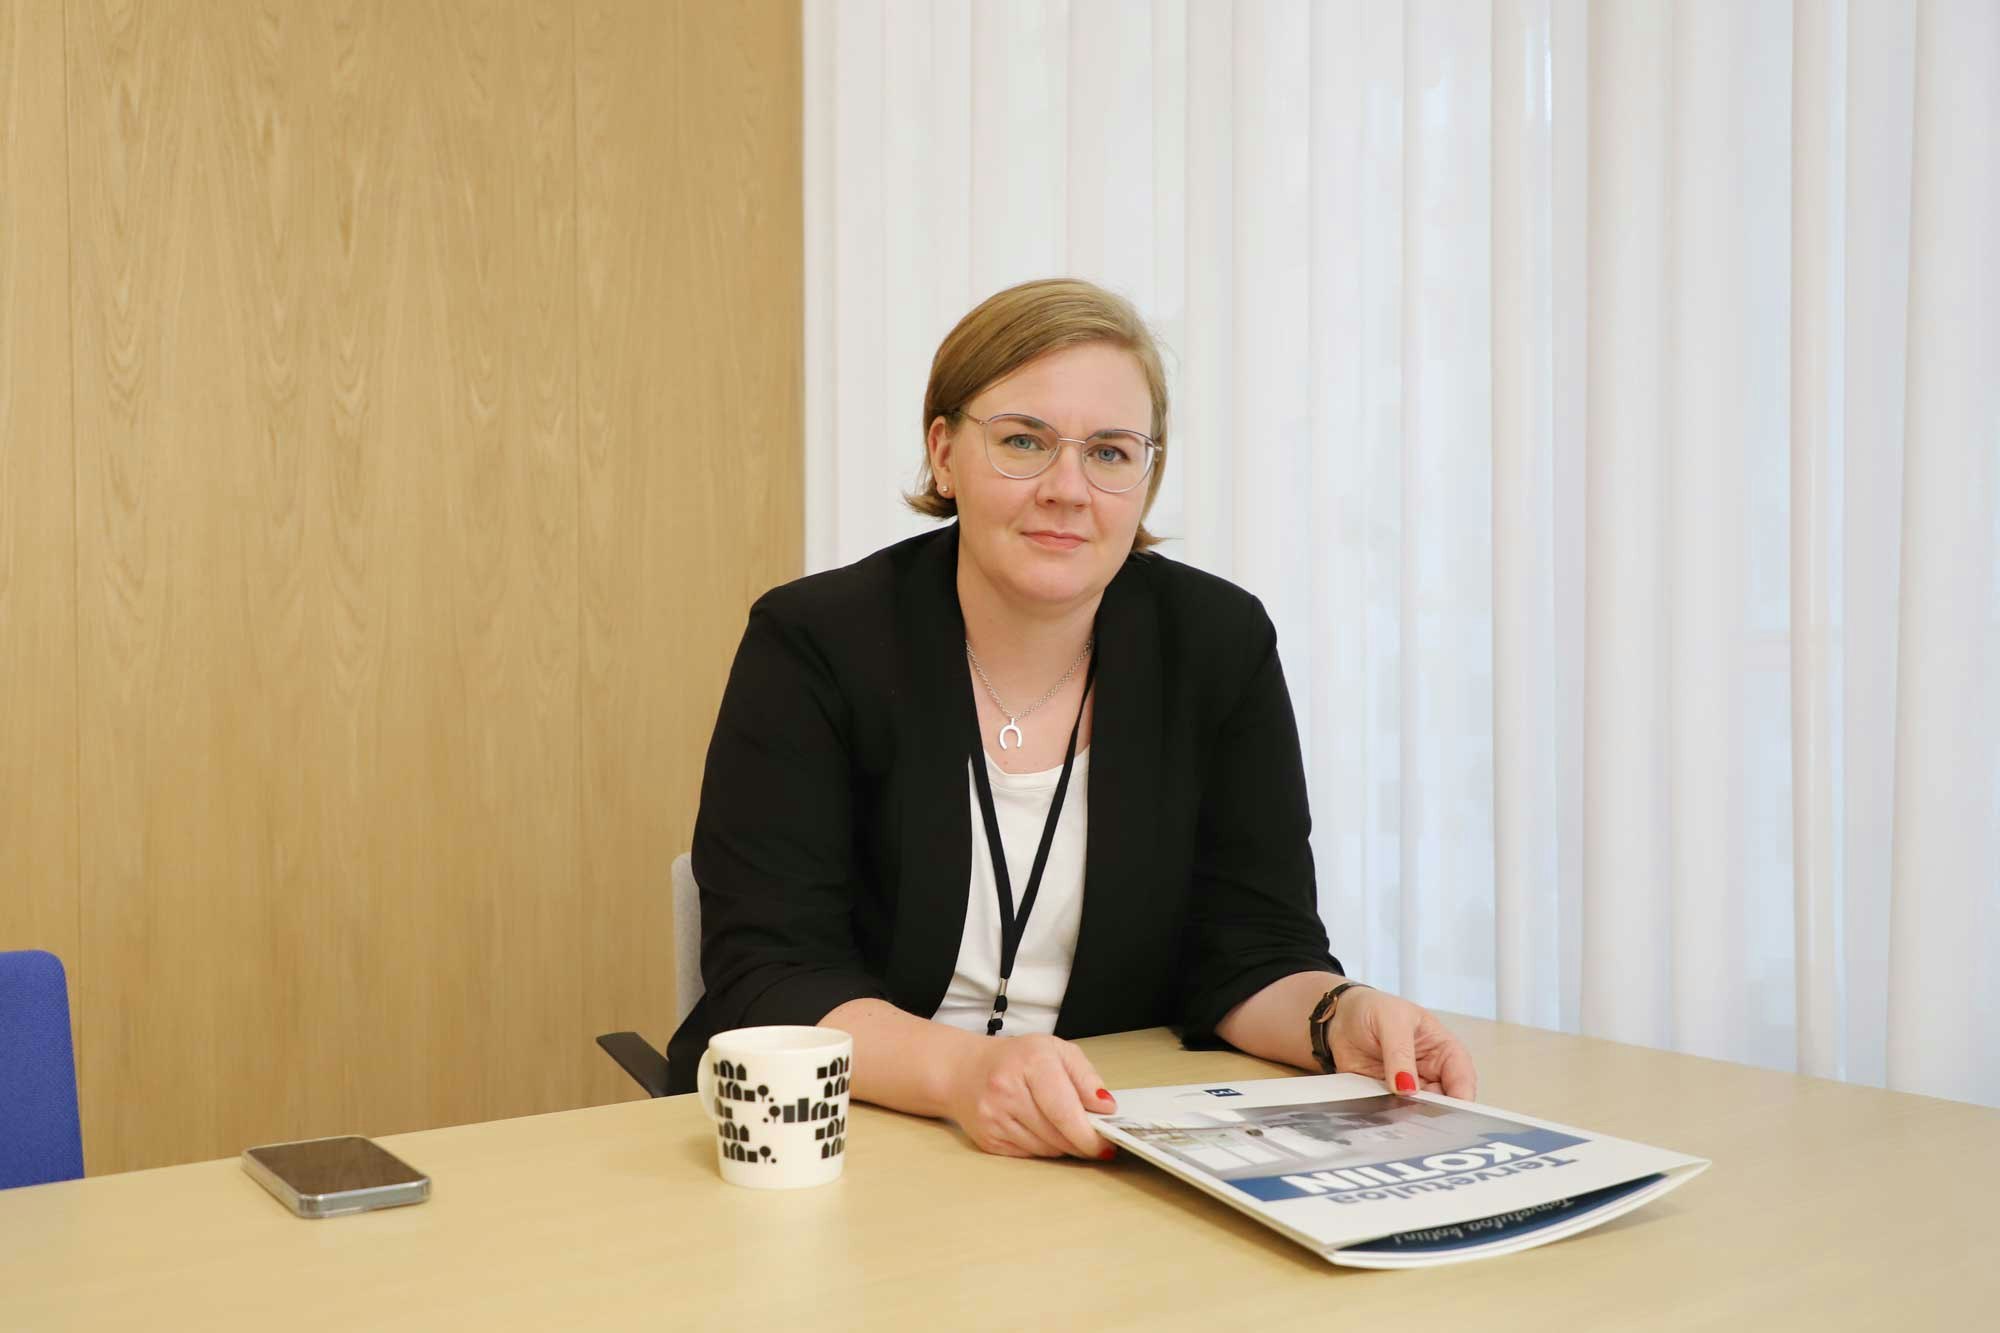 TVT Asuntojen lakimies Anne Ala-Nissilä muistuttaa vuokralaisen vastuusta.